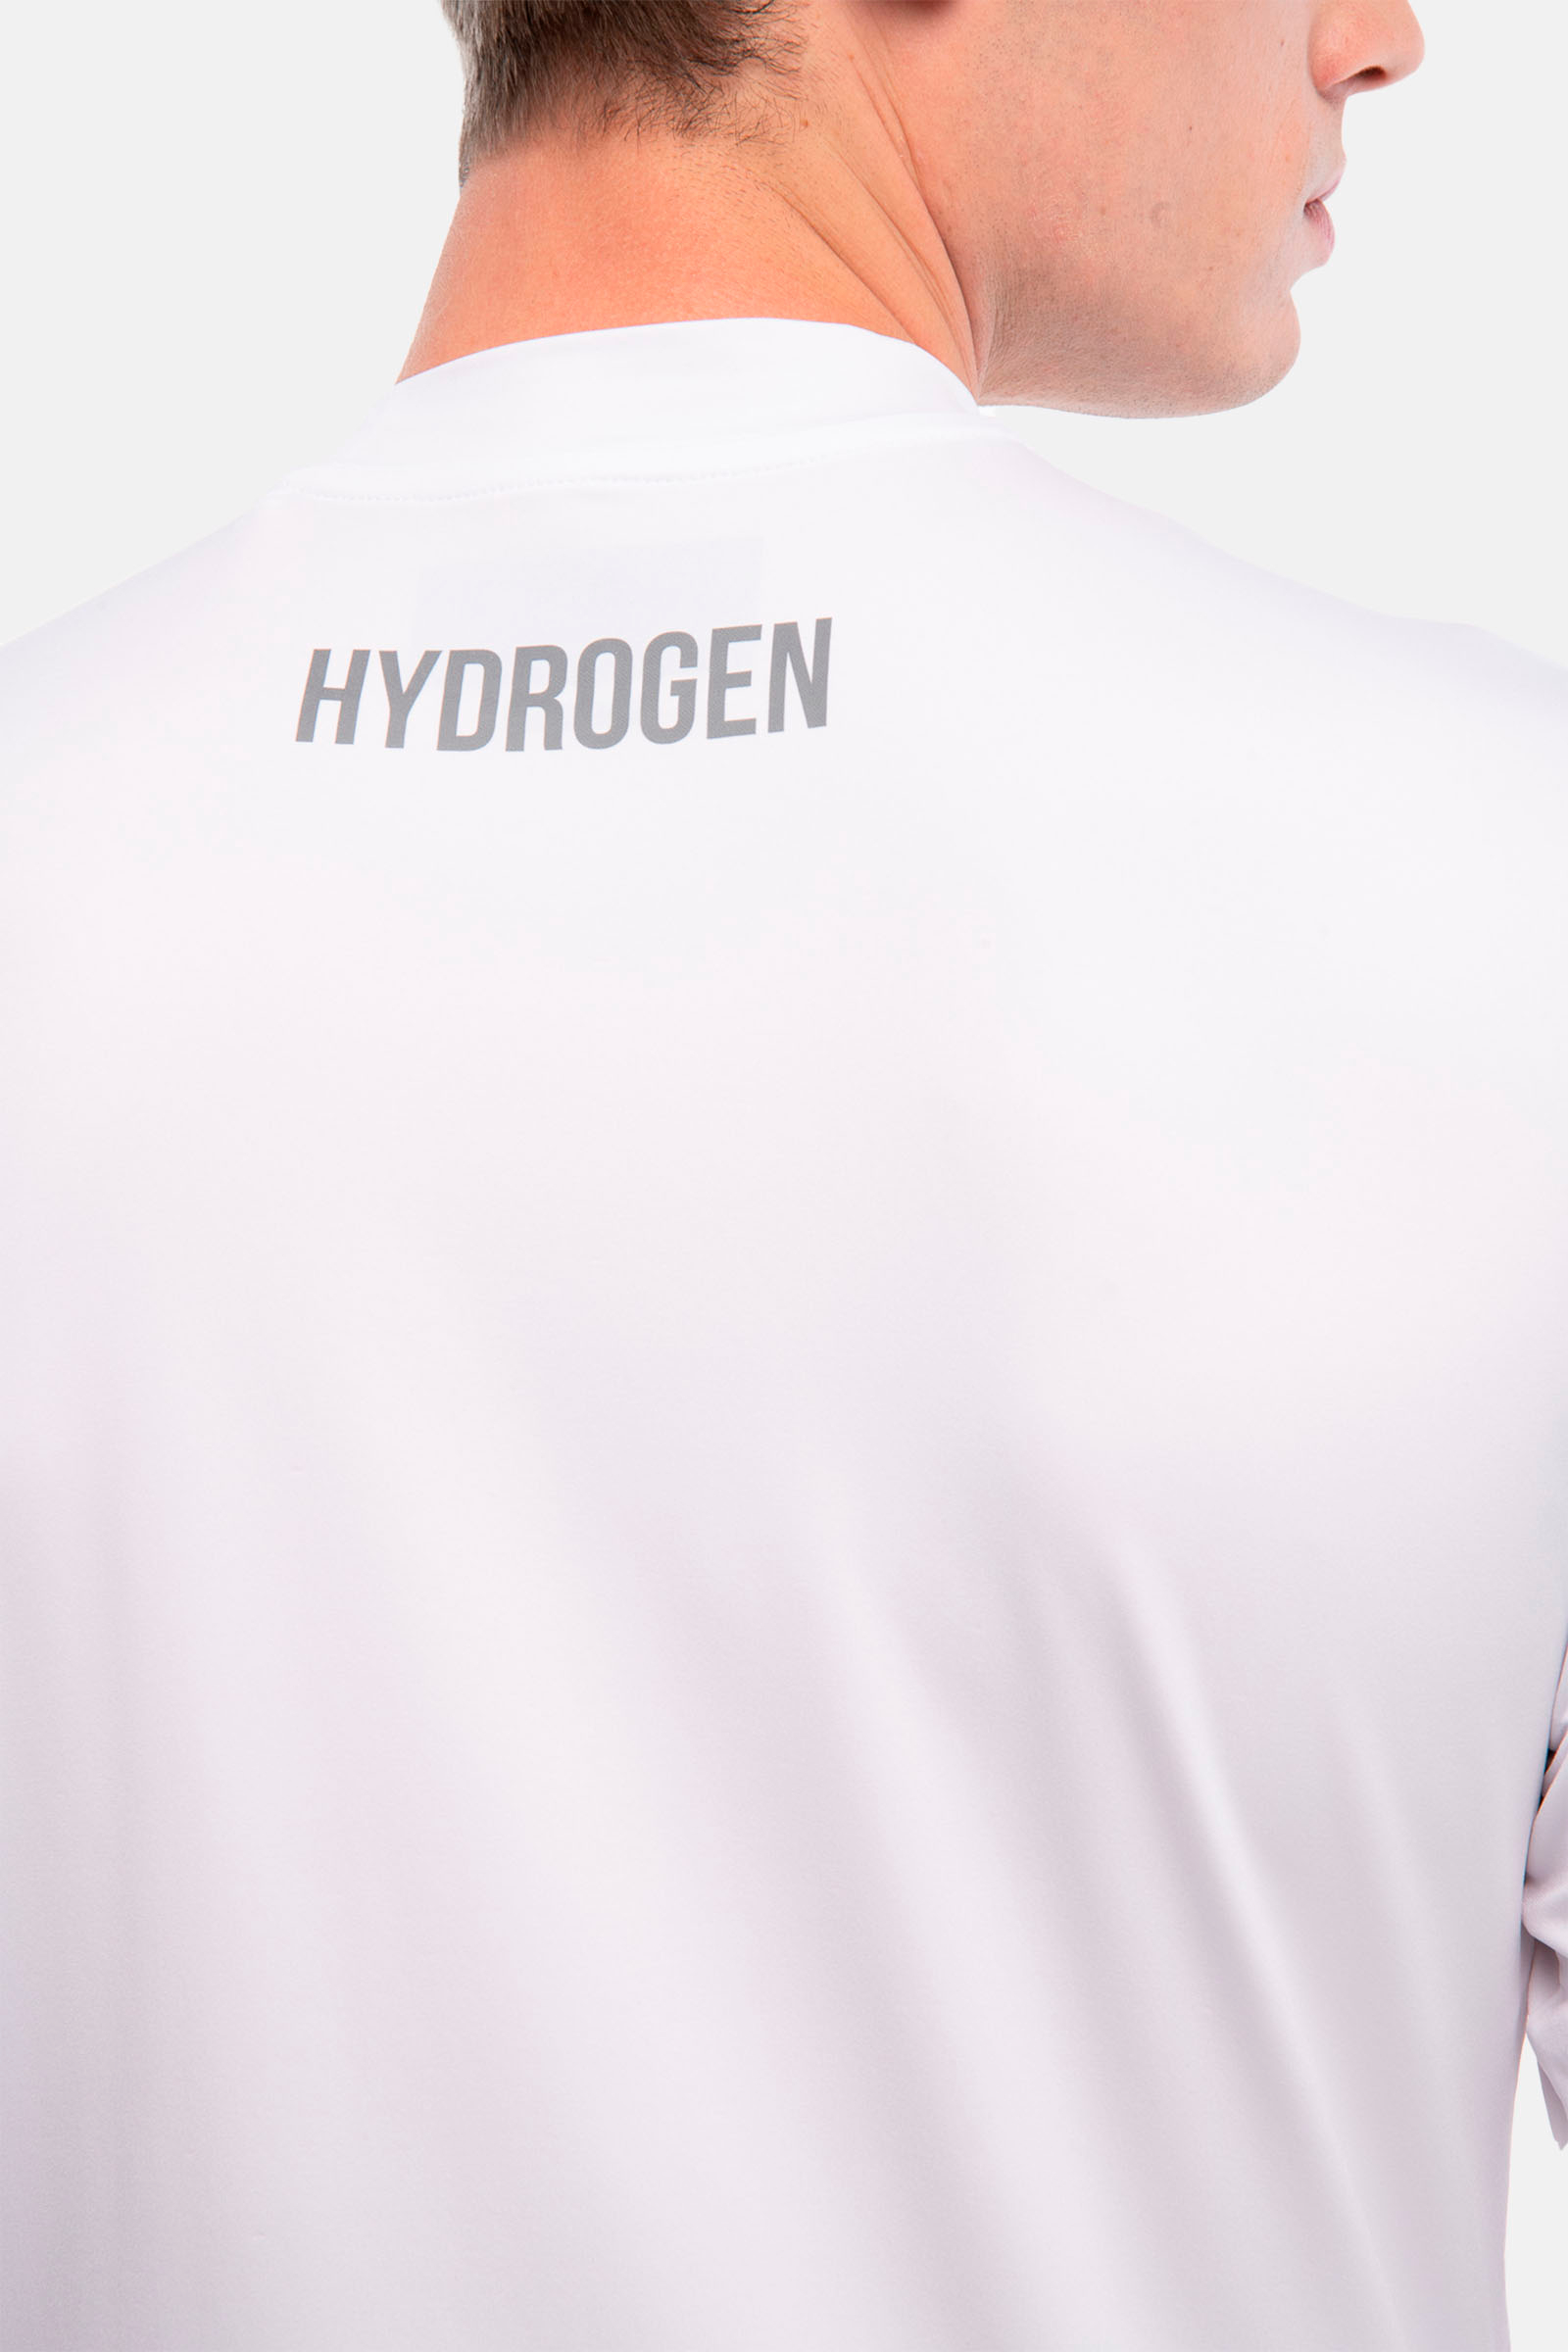 ROLL NECK - WHITE - Hydrogen - Luxury Sportwear